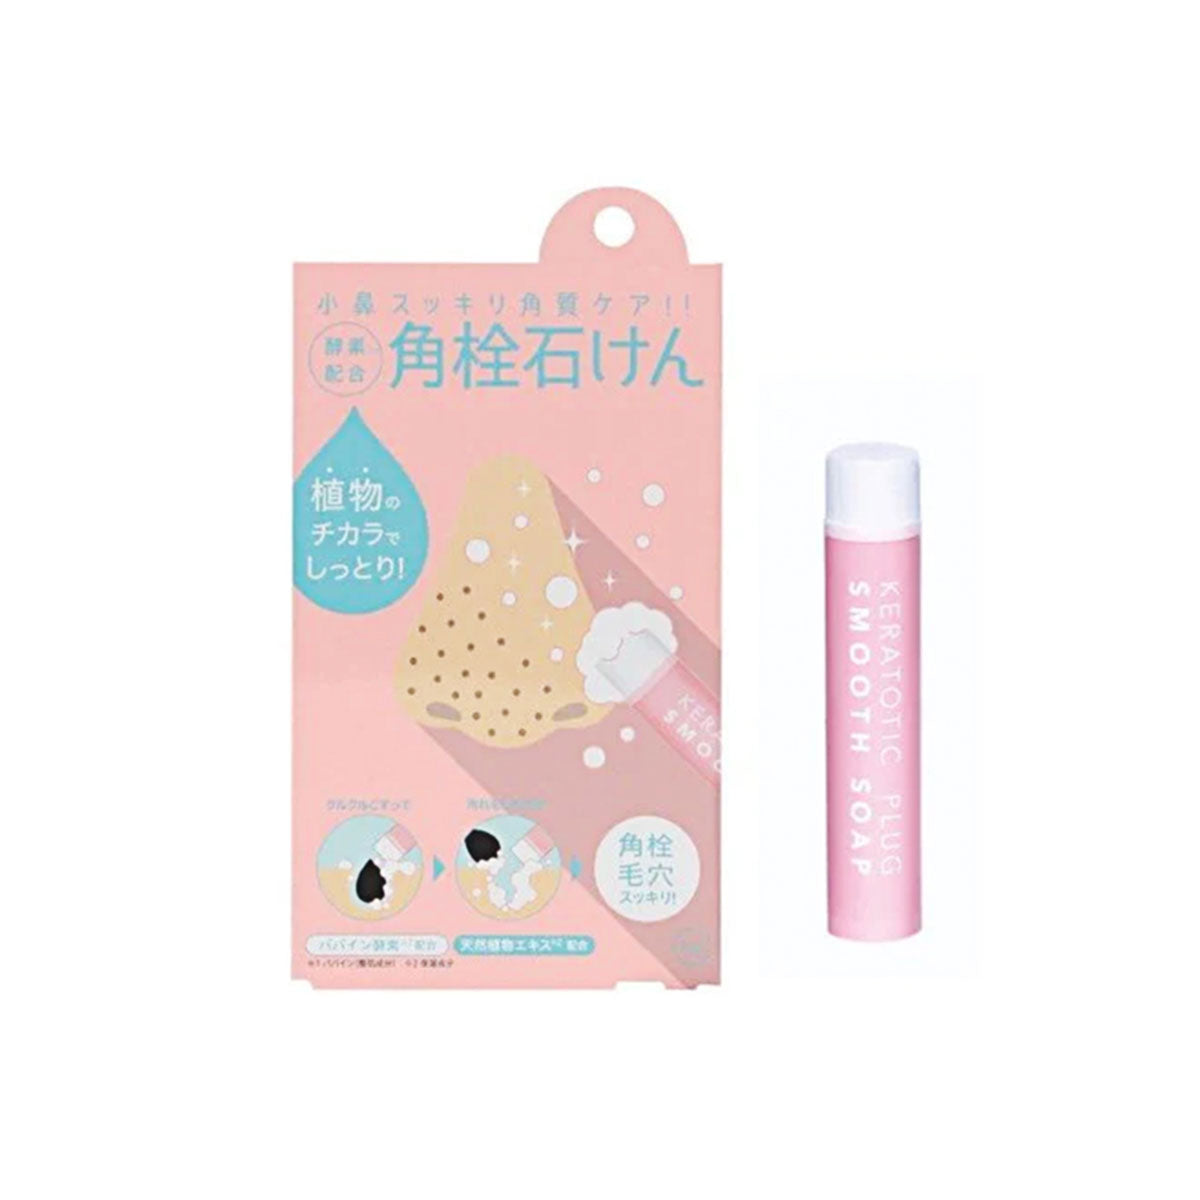 日本COGIT酵素洗面香皂蜡笔棒 #保湿型 8g 